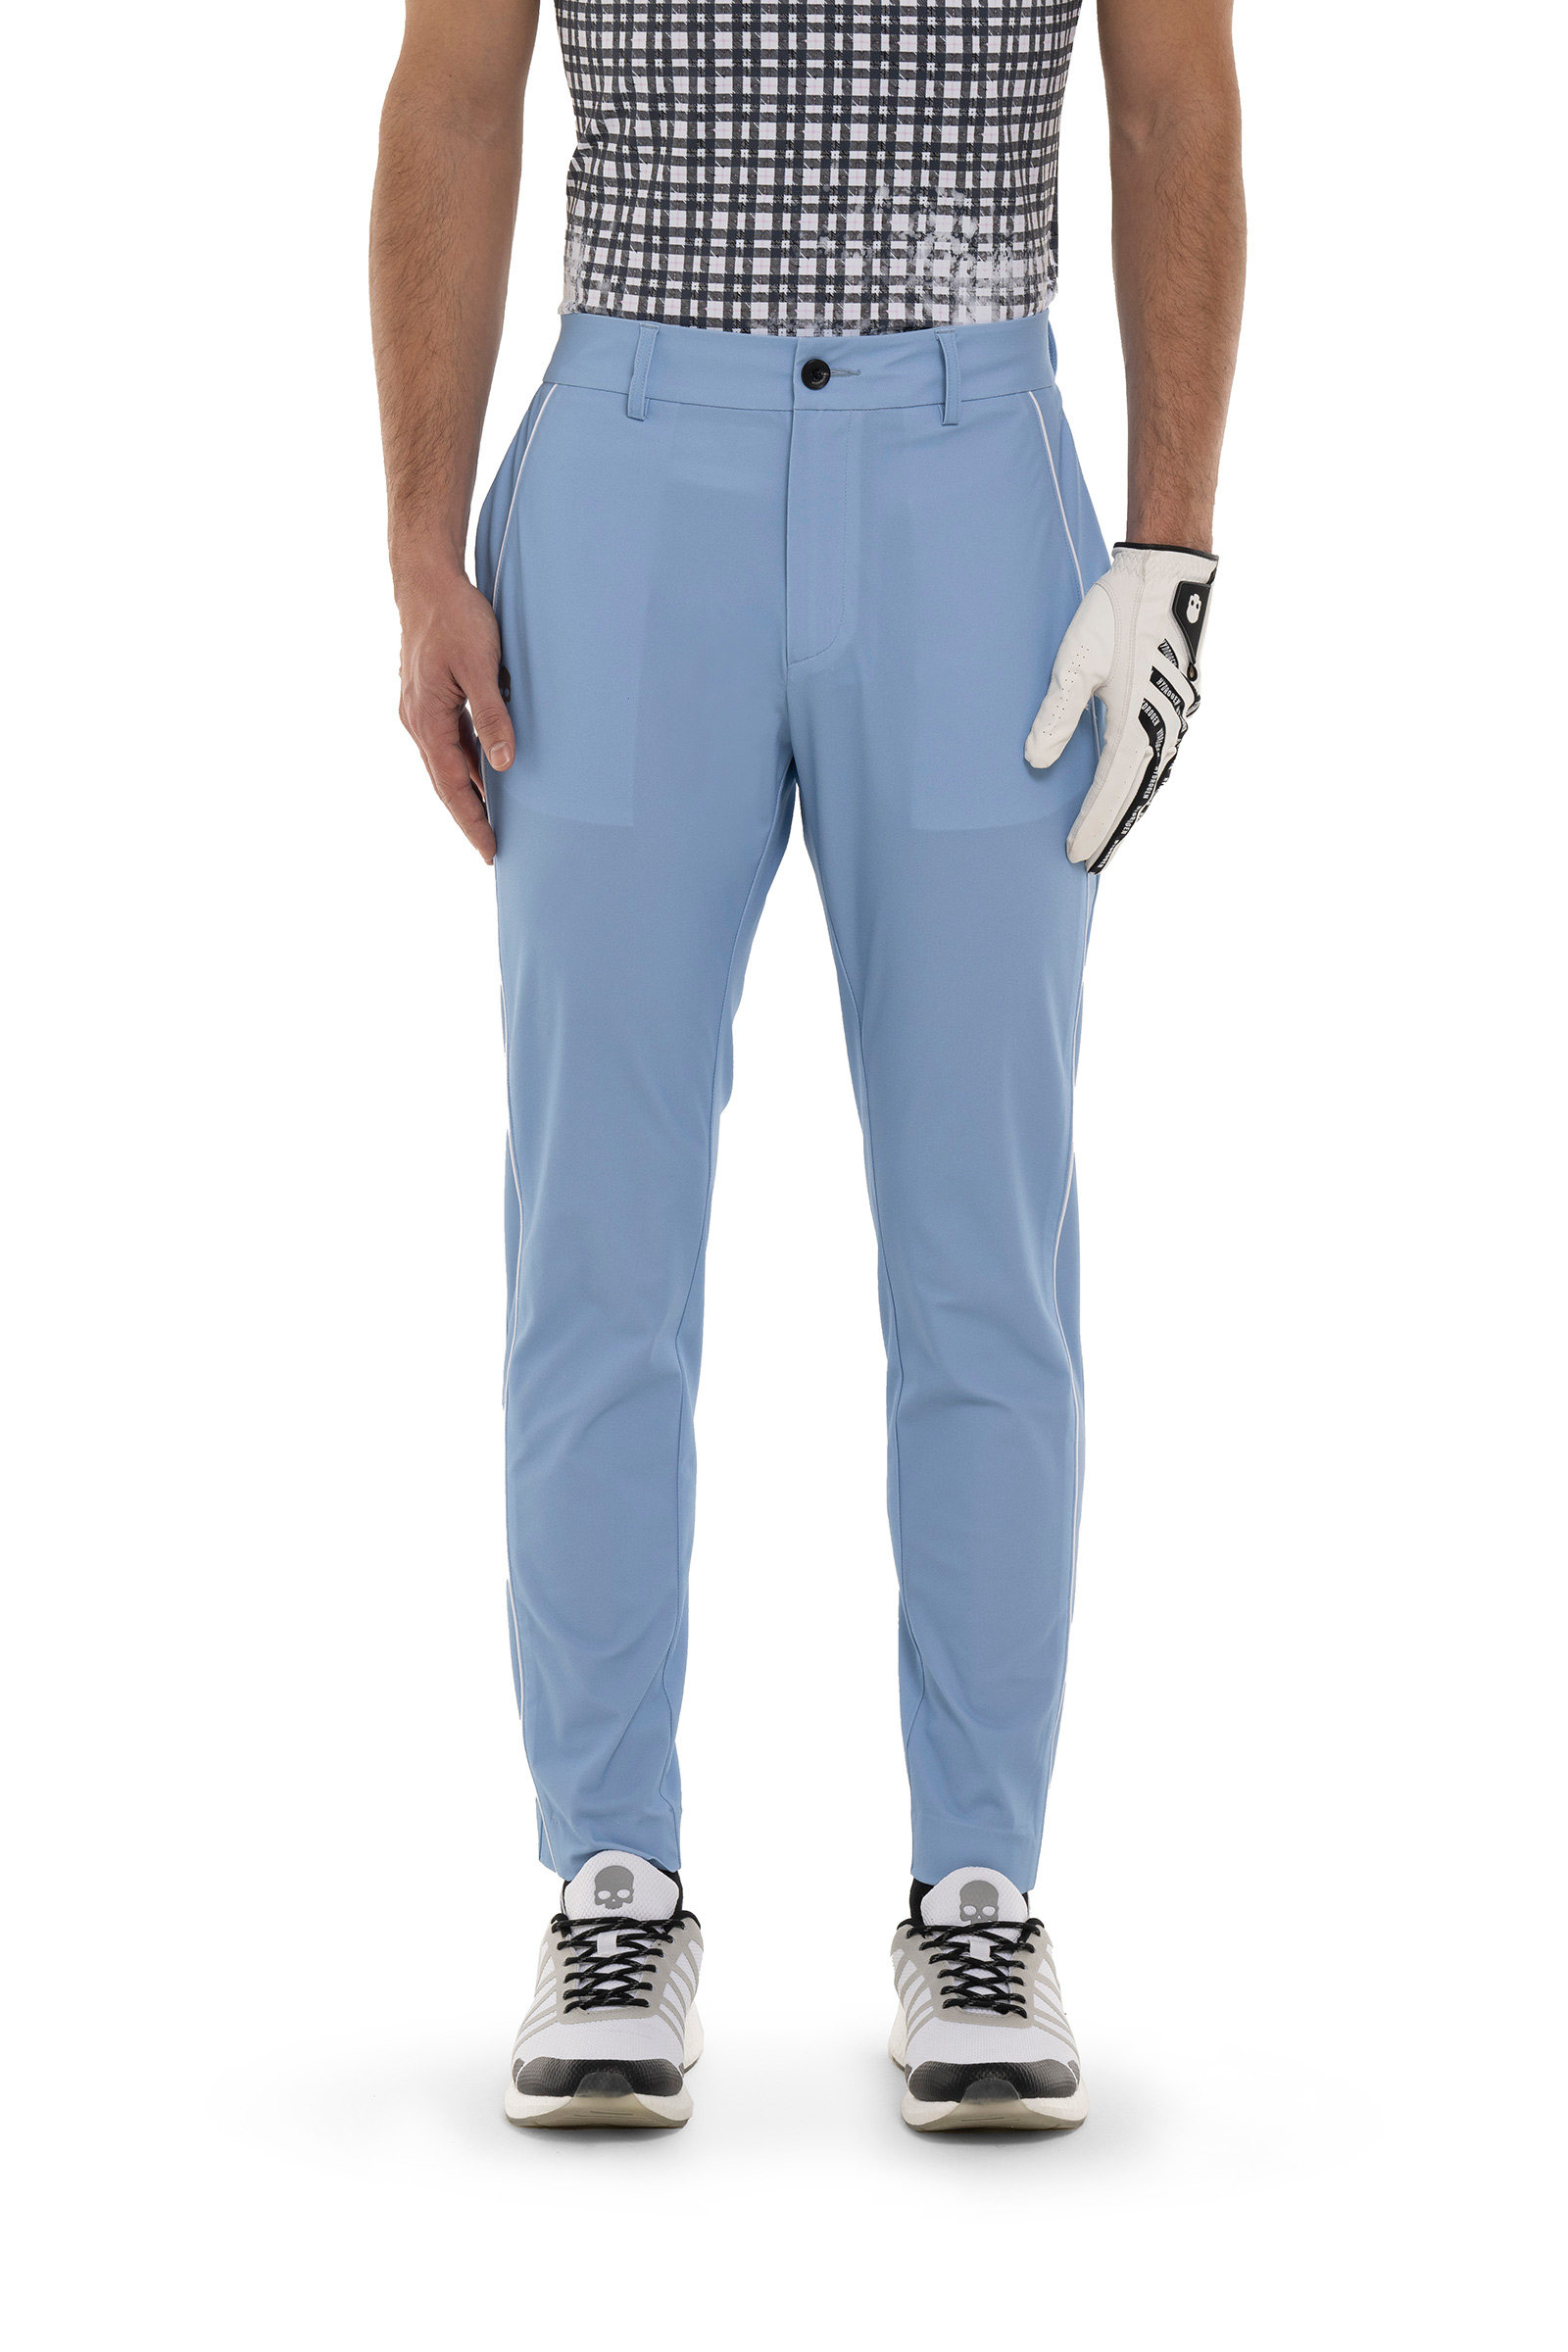 PIPING TECH PANTS - BLUE - Hydrogen - Luxury Sportwear